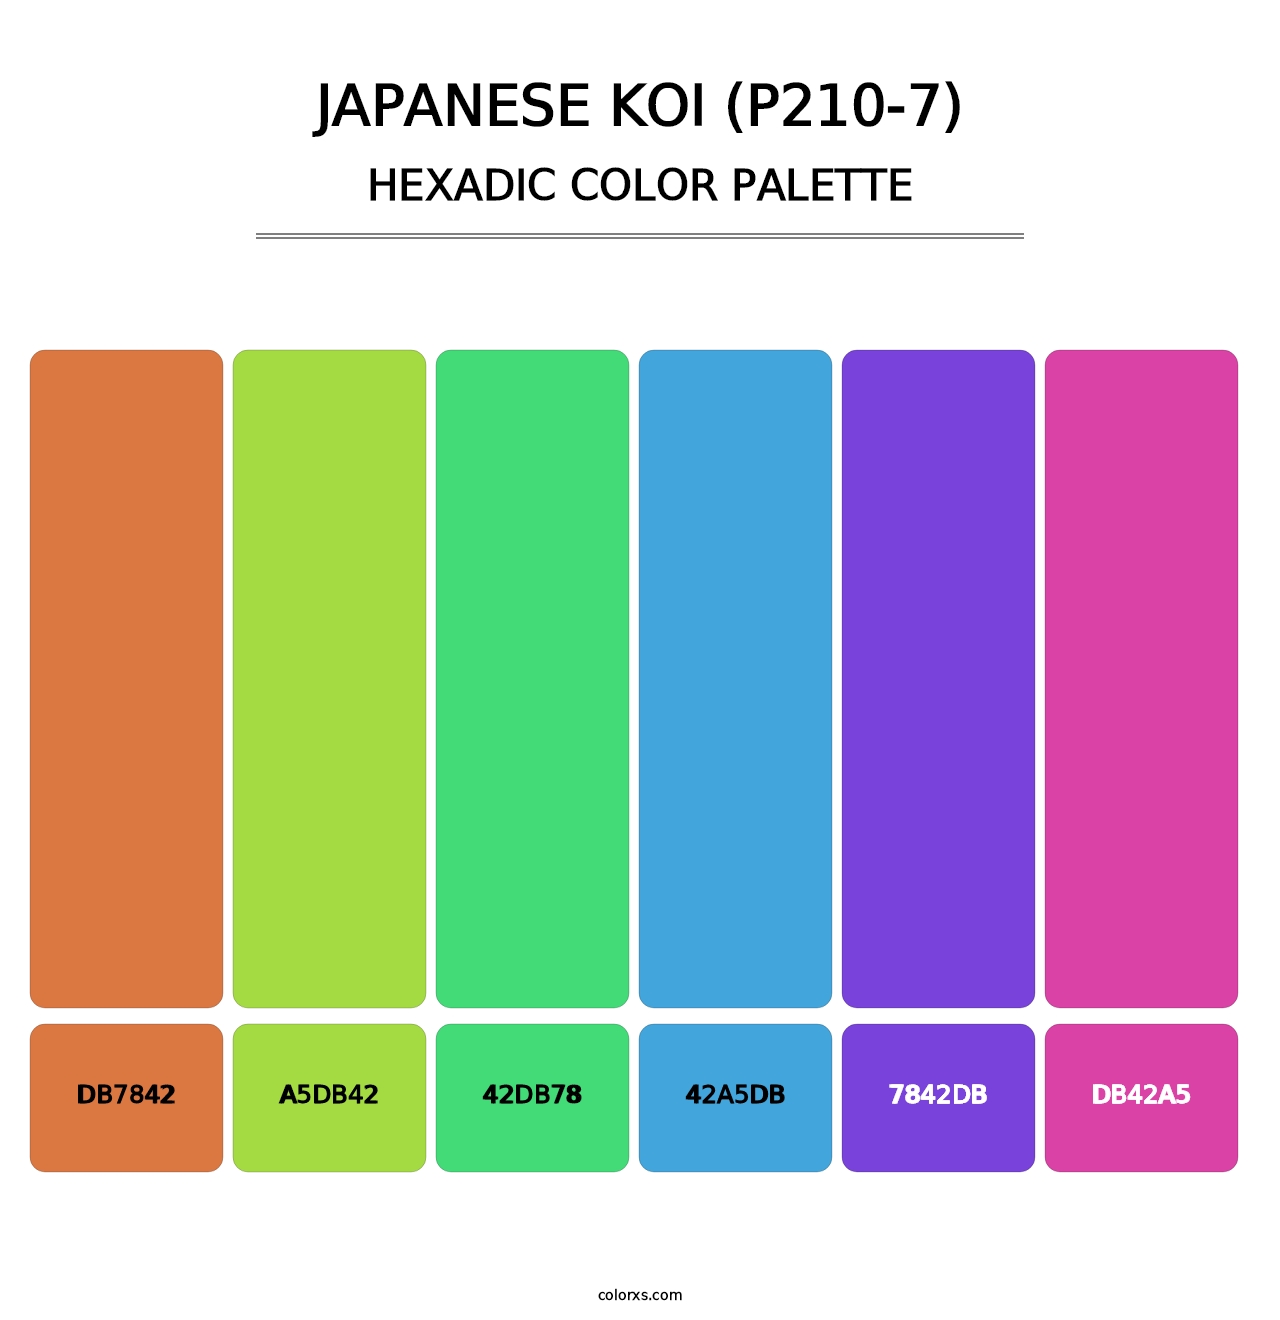 Japanese Koi (P210-7) - Hexadic Color Palette